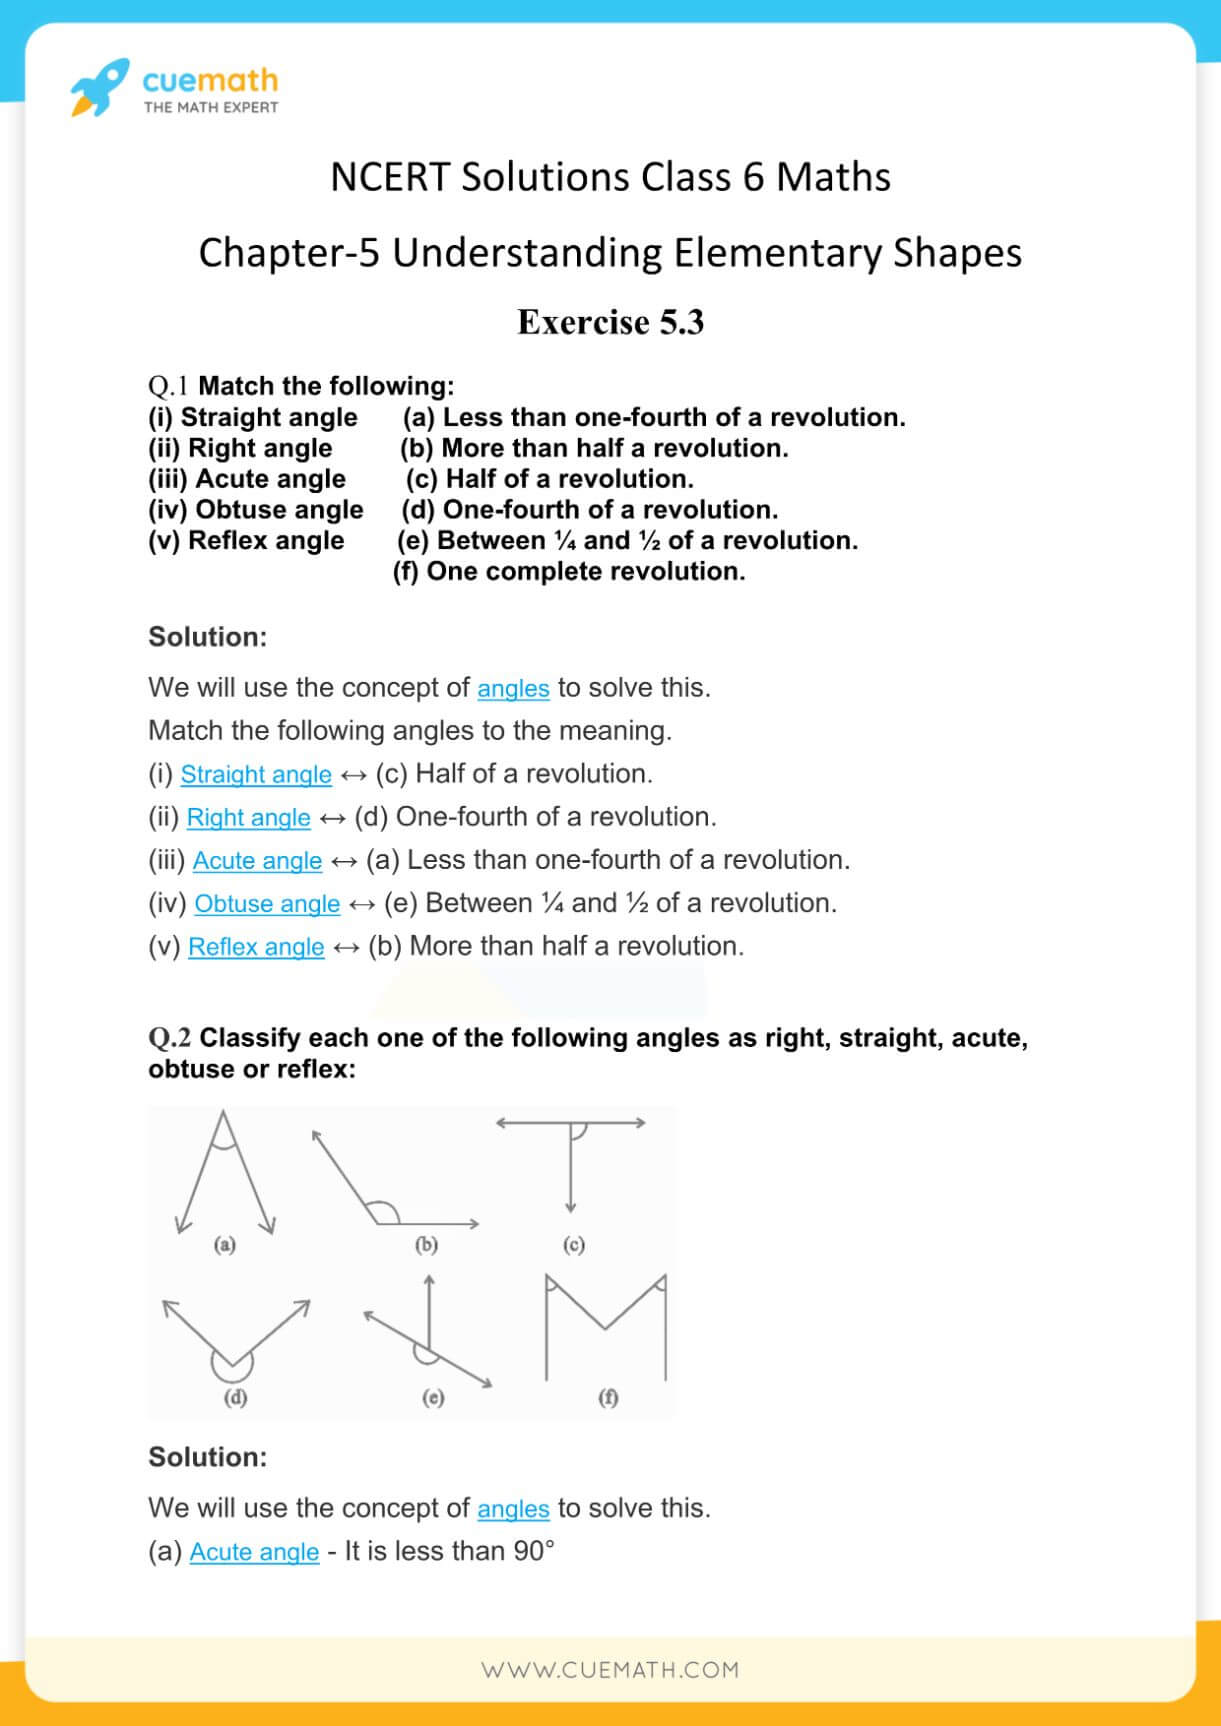 NCERT Solutions Class 6 Maths Chapter 5-13